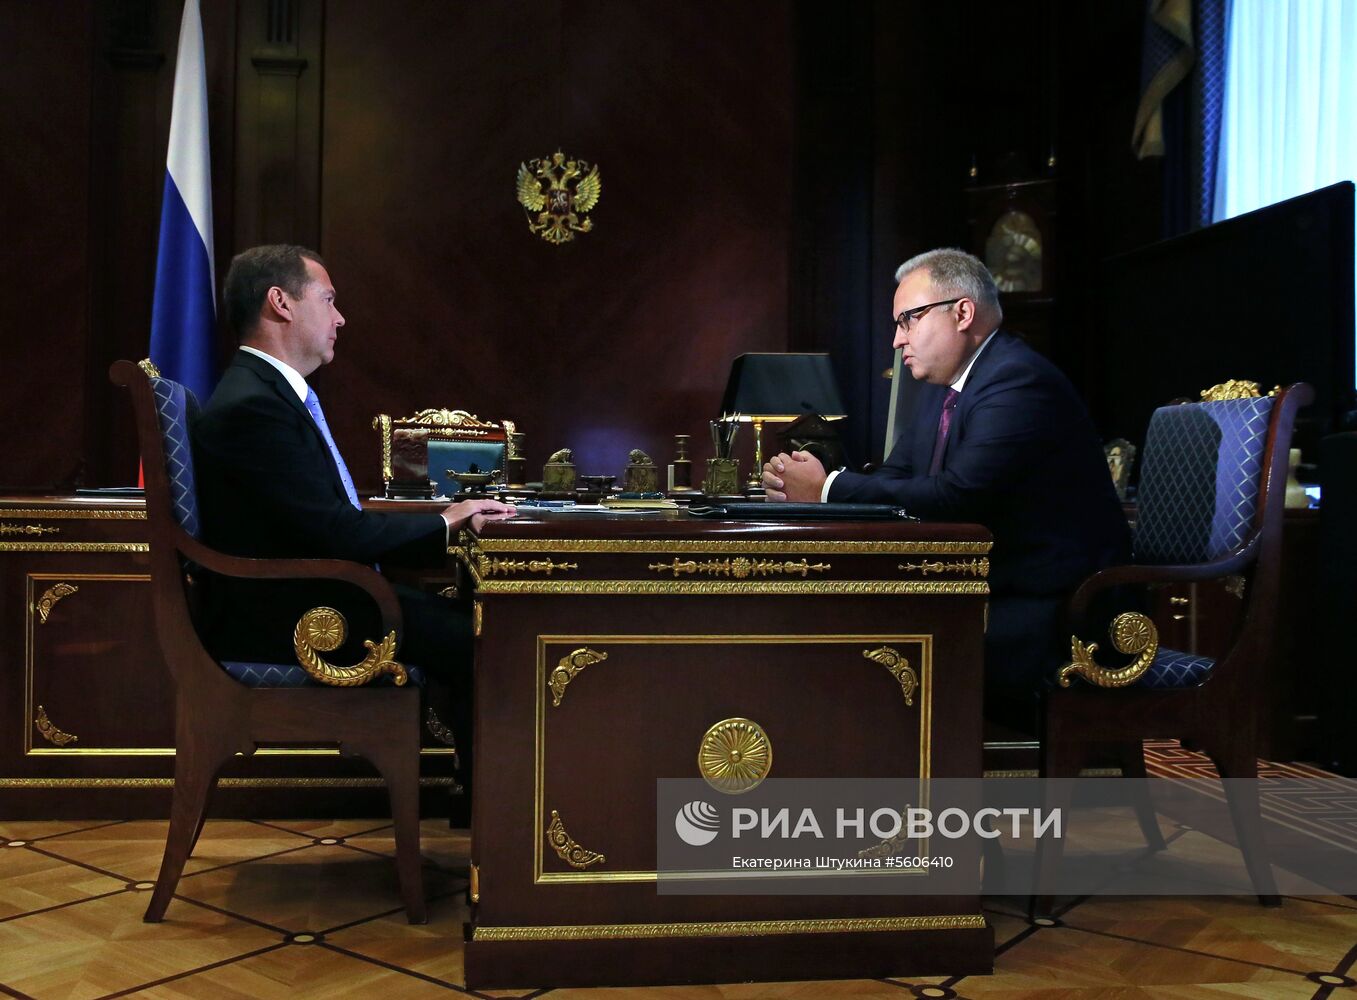 Премьер-министр РФ Д. Медведев встретился с главой ПАО "ФСК ЕЭС" А. Муровым